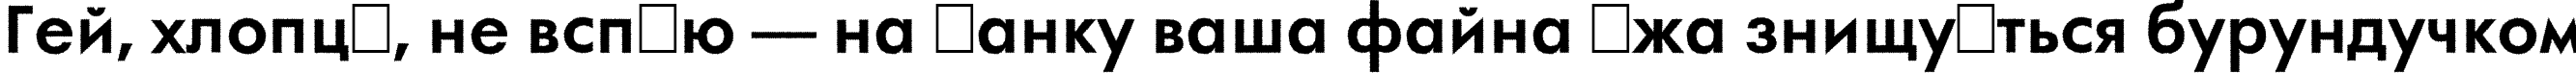 Пример написания шрифтом a_FuturaOrtoRg Bold текста на украинском